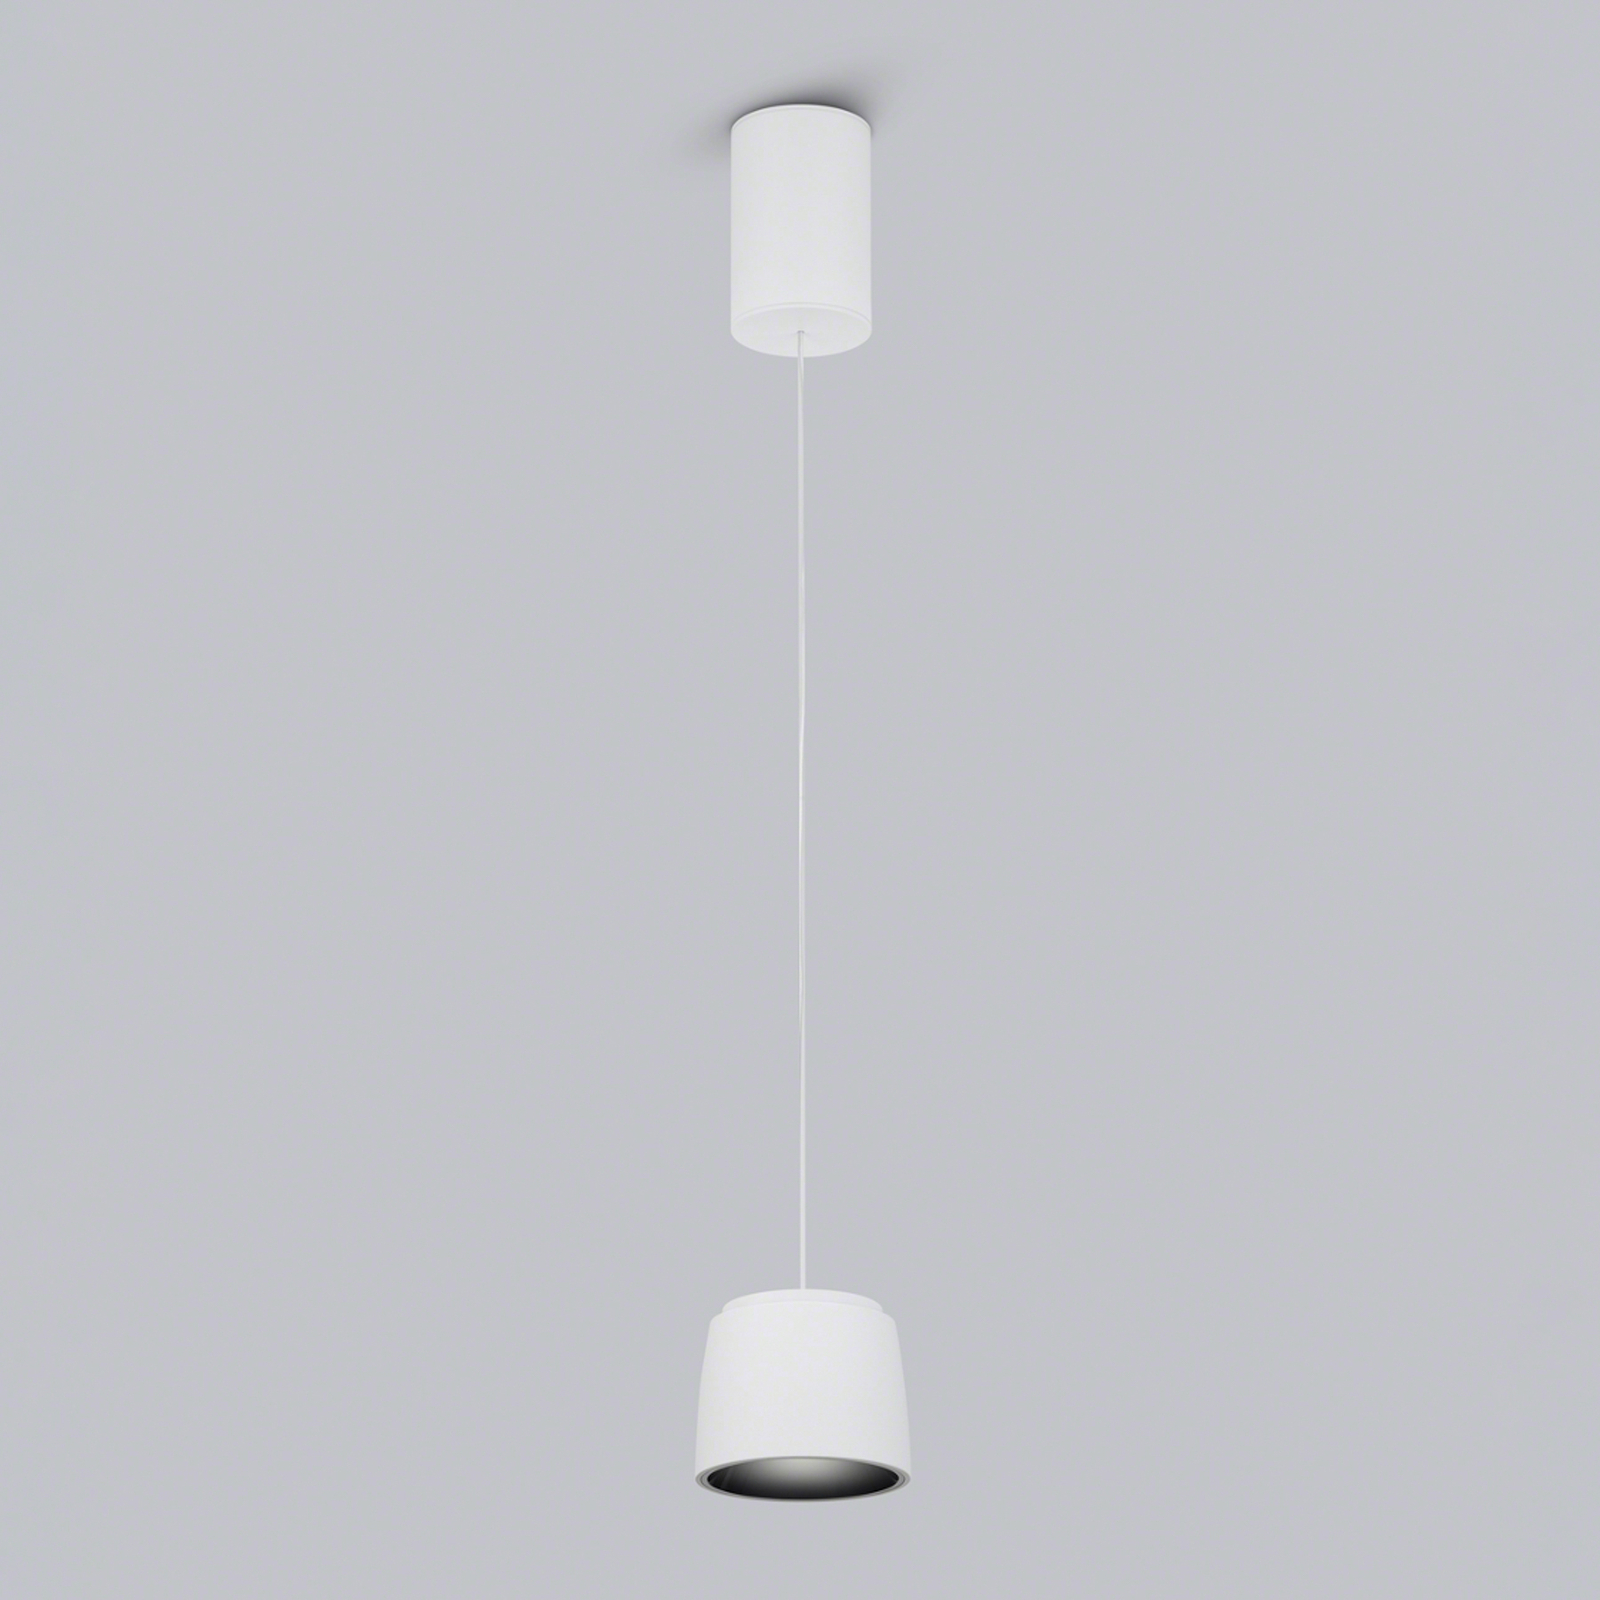 Helestra Ove LED závěsné světlo Ø9,5cm 927 bílá